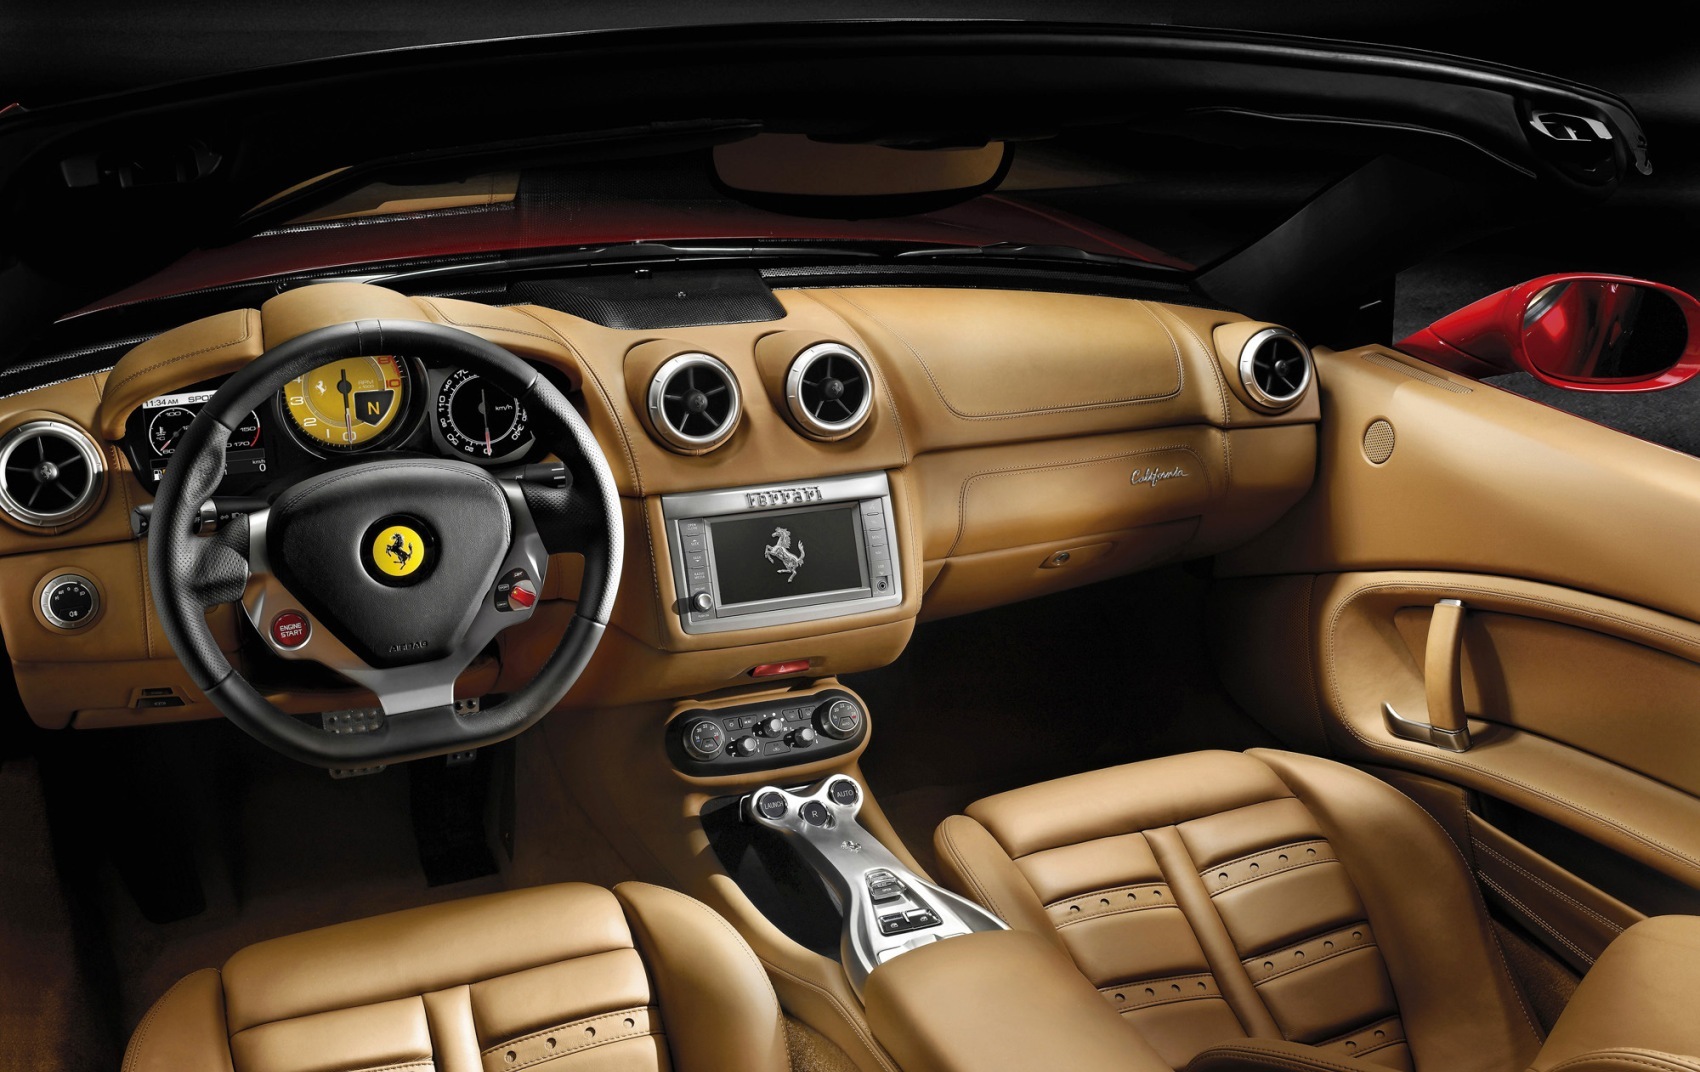 Ferrari California Review Price Specification Mileage Interior Color